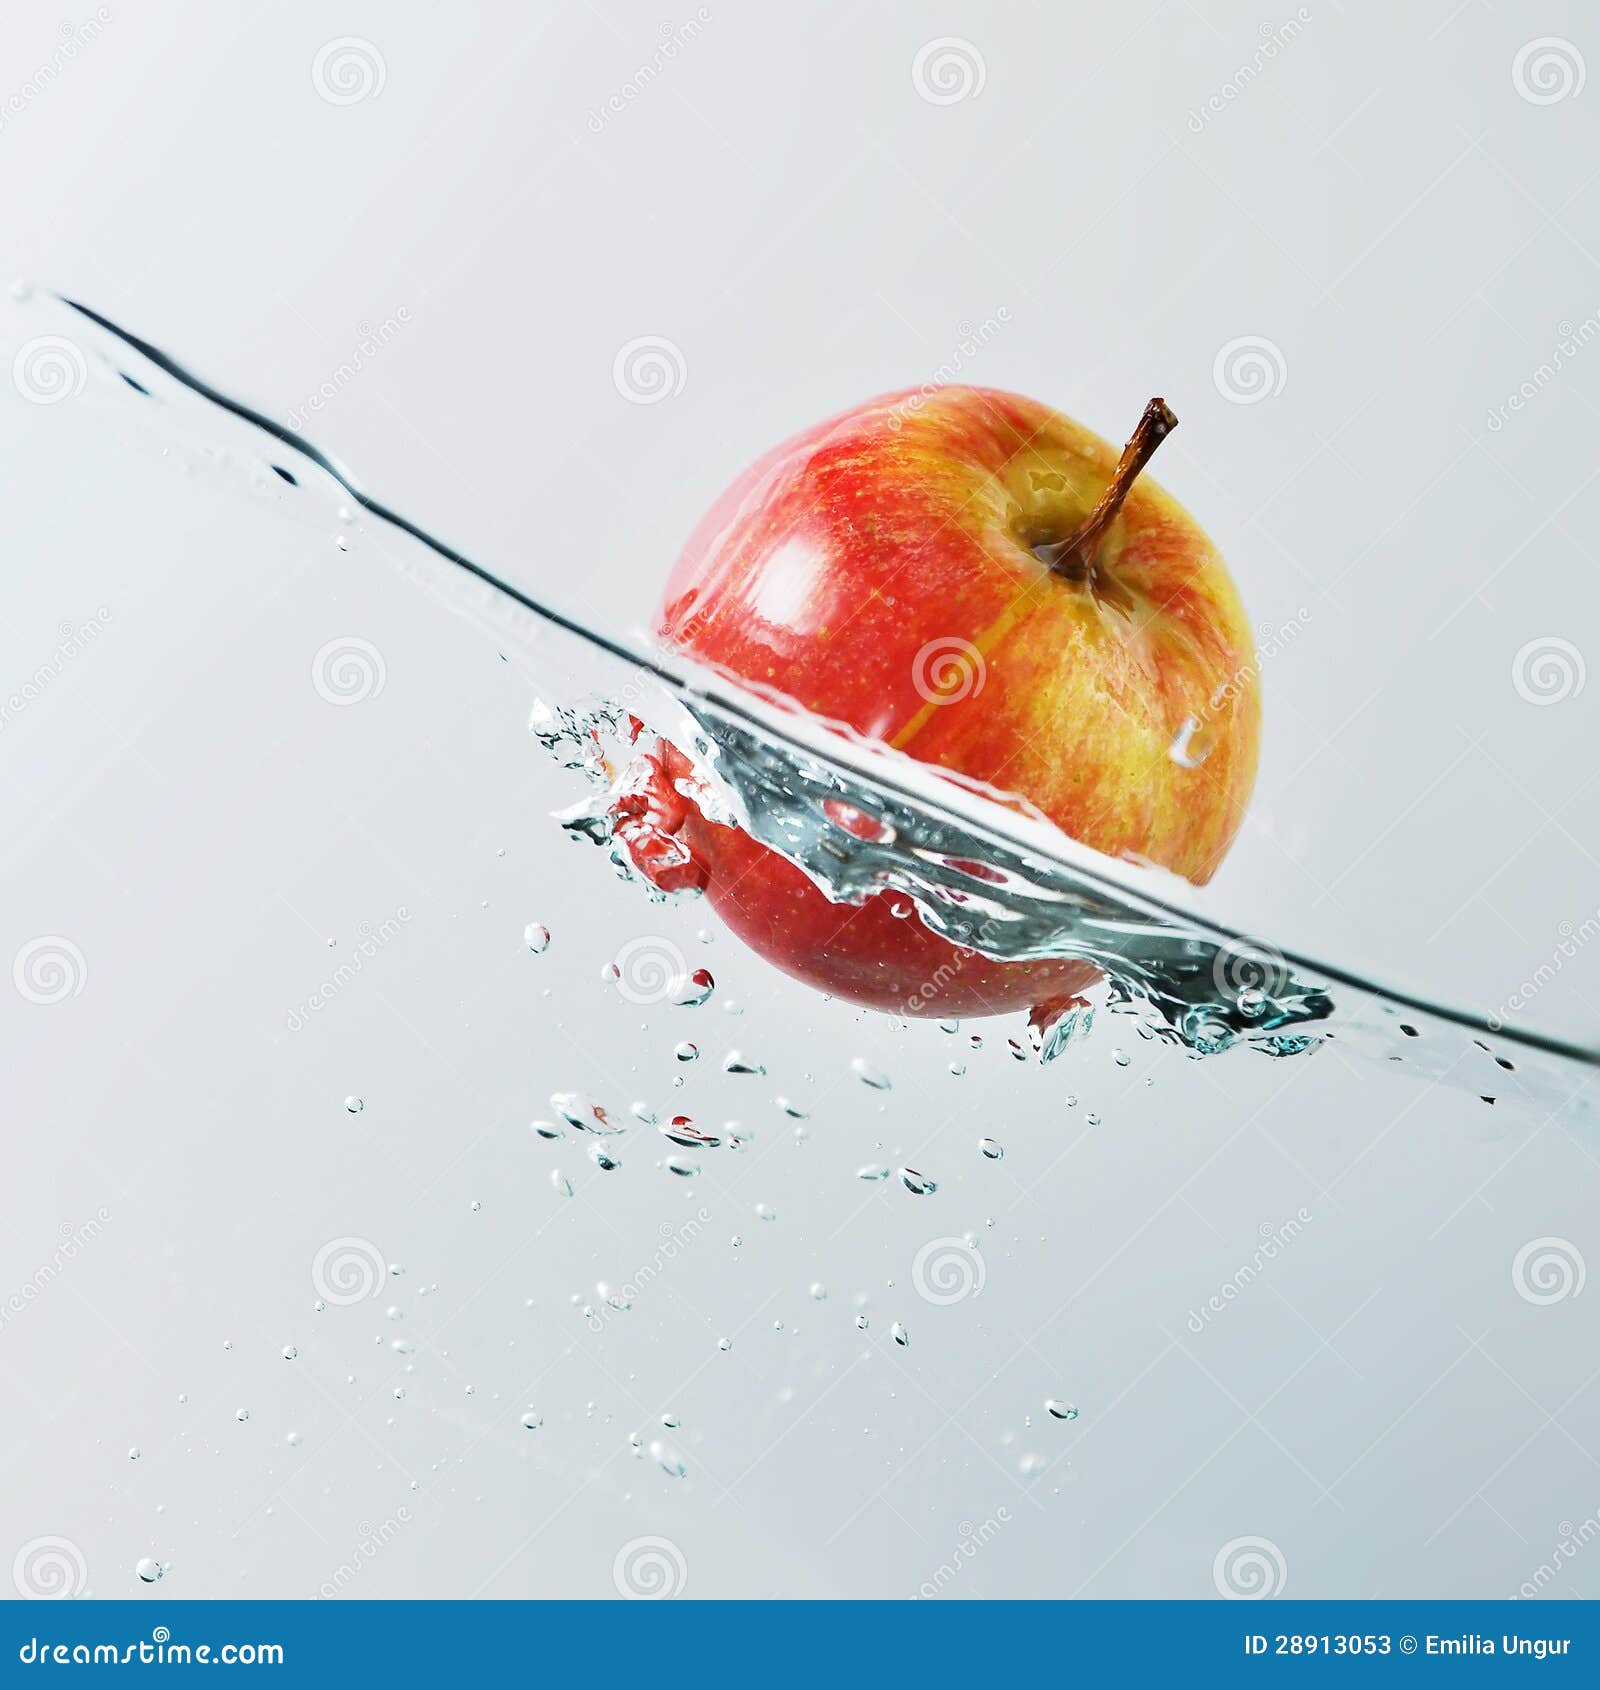 Floating apple stock image. Image of splashing, fresh - 28913053